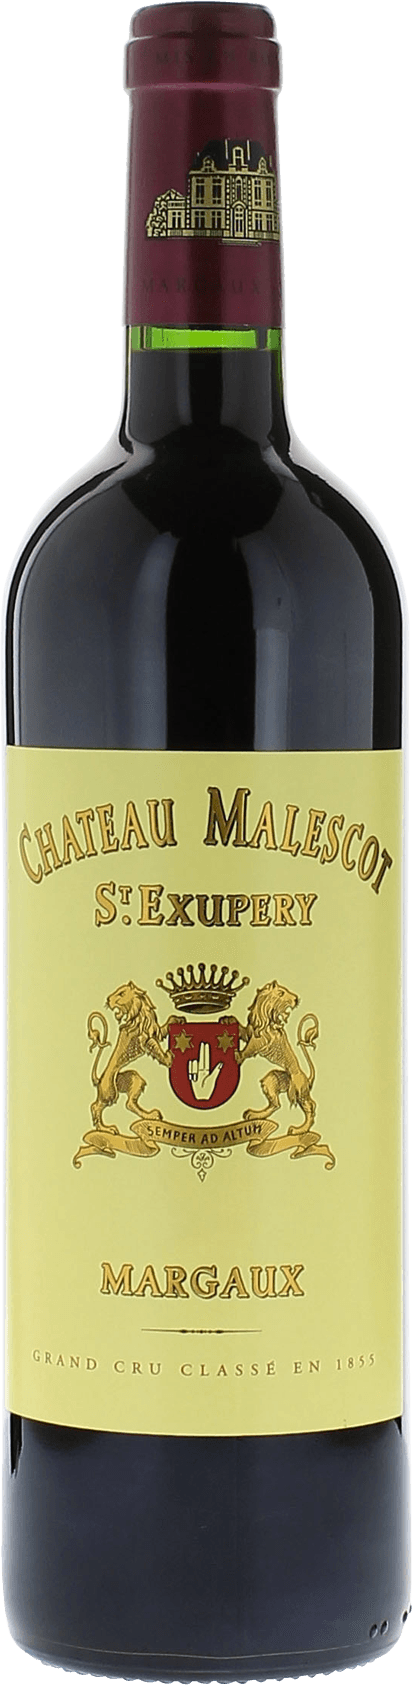 Malescot saint exupery 2010 3me Grand cru class Margaux, Bordeaux rouge